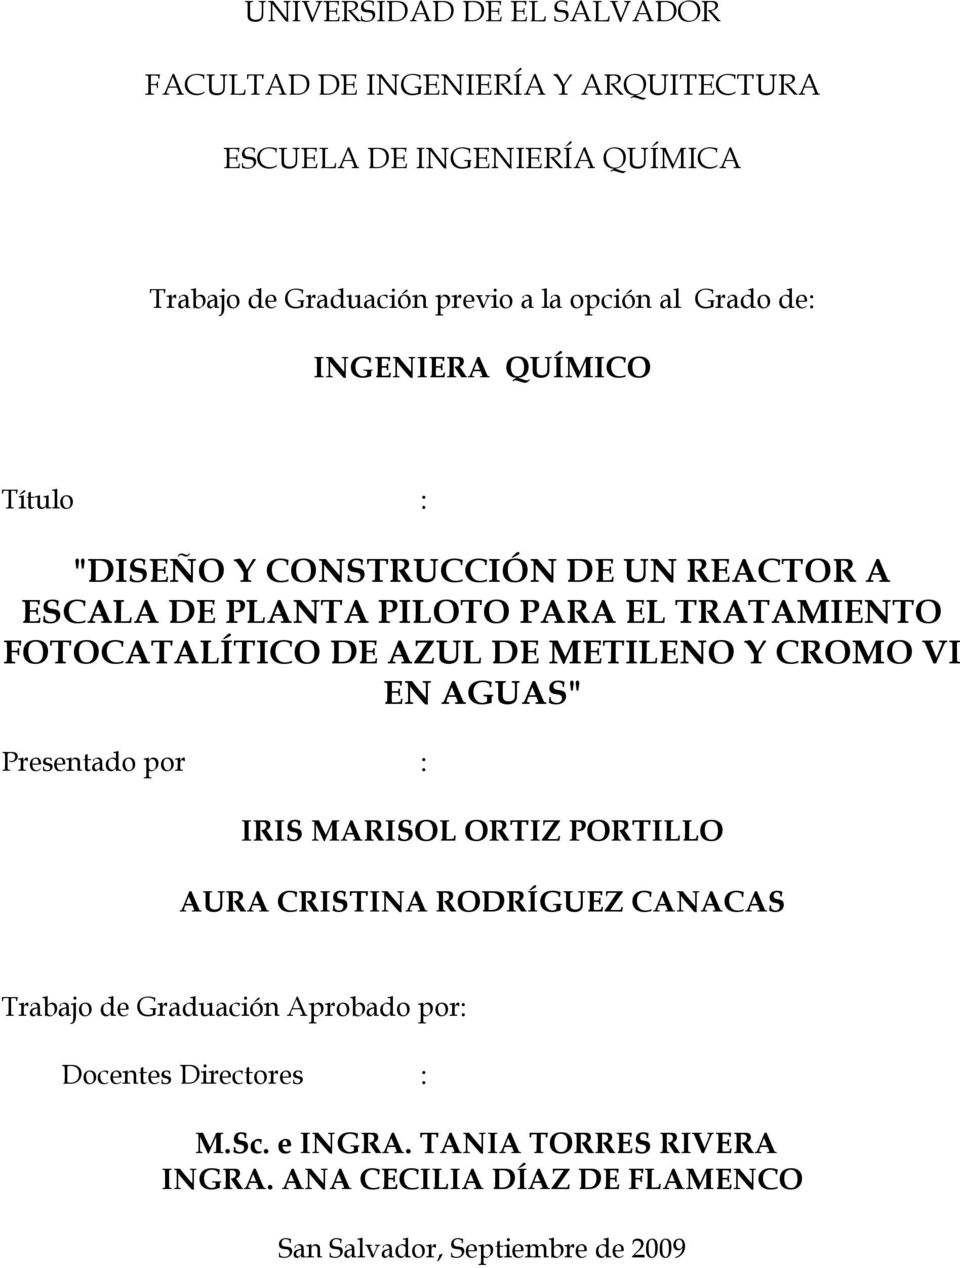 AZUL DE METILENO Y CROMO VI EN AGUAS" Presentado por : IRIS MARISOL ORTIZ PORTILLO AURA CRISTINA RODRÍGUEZ CANACAS Trabajo de Graduación